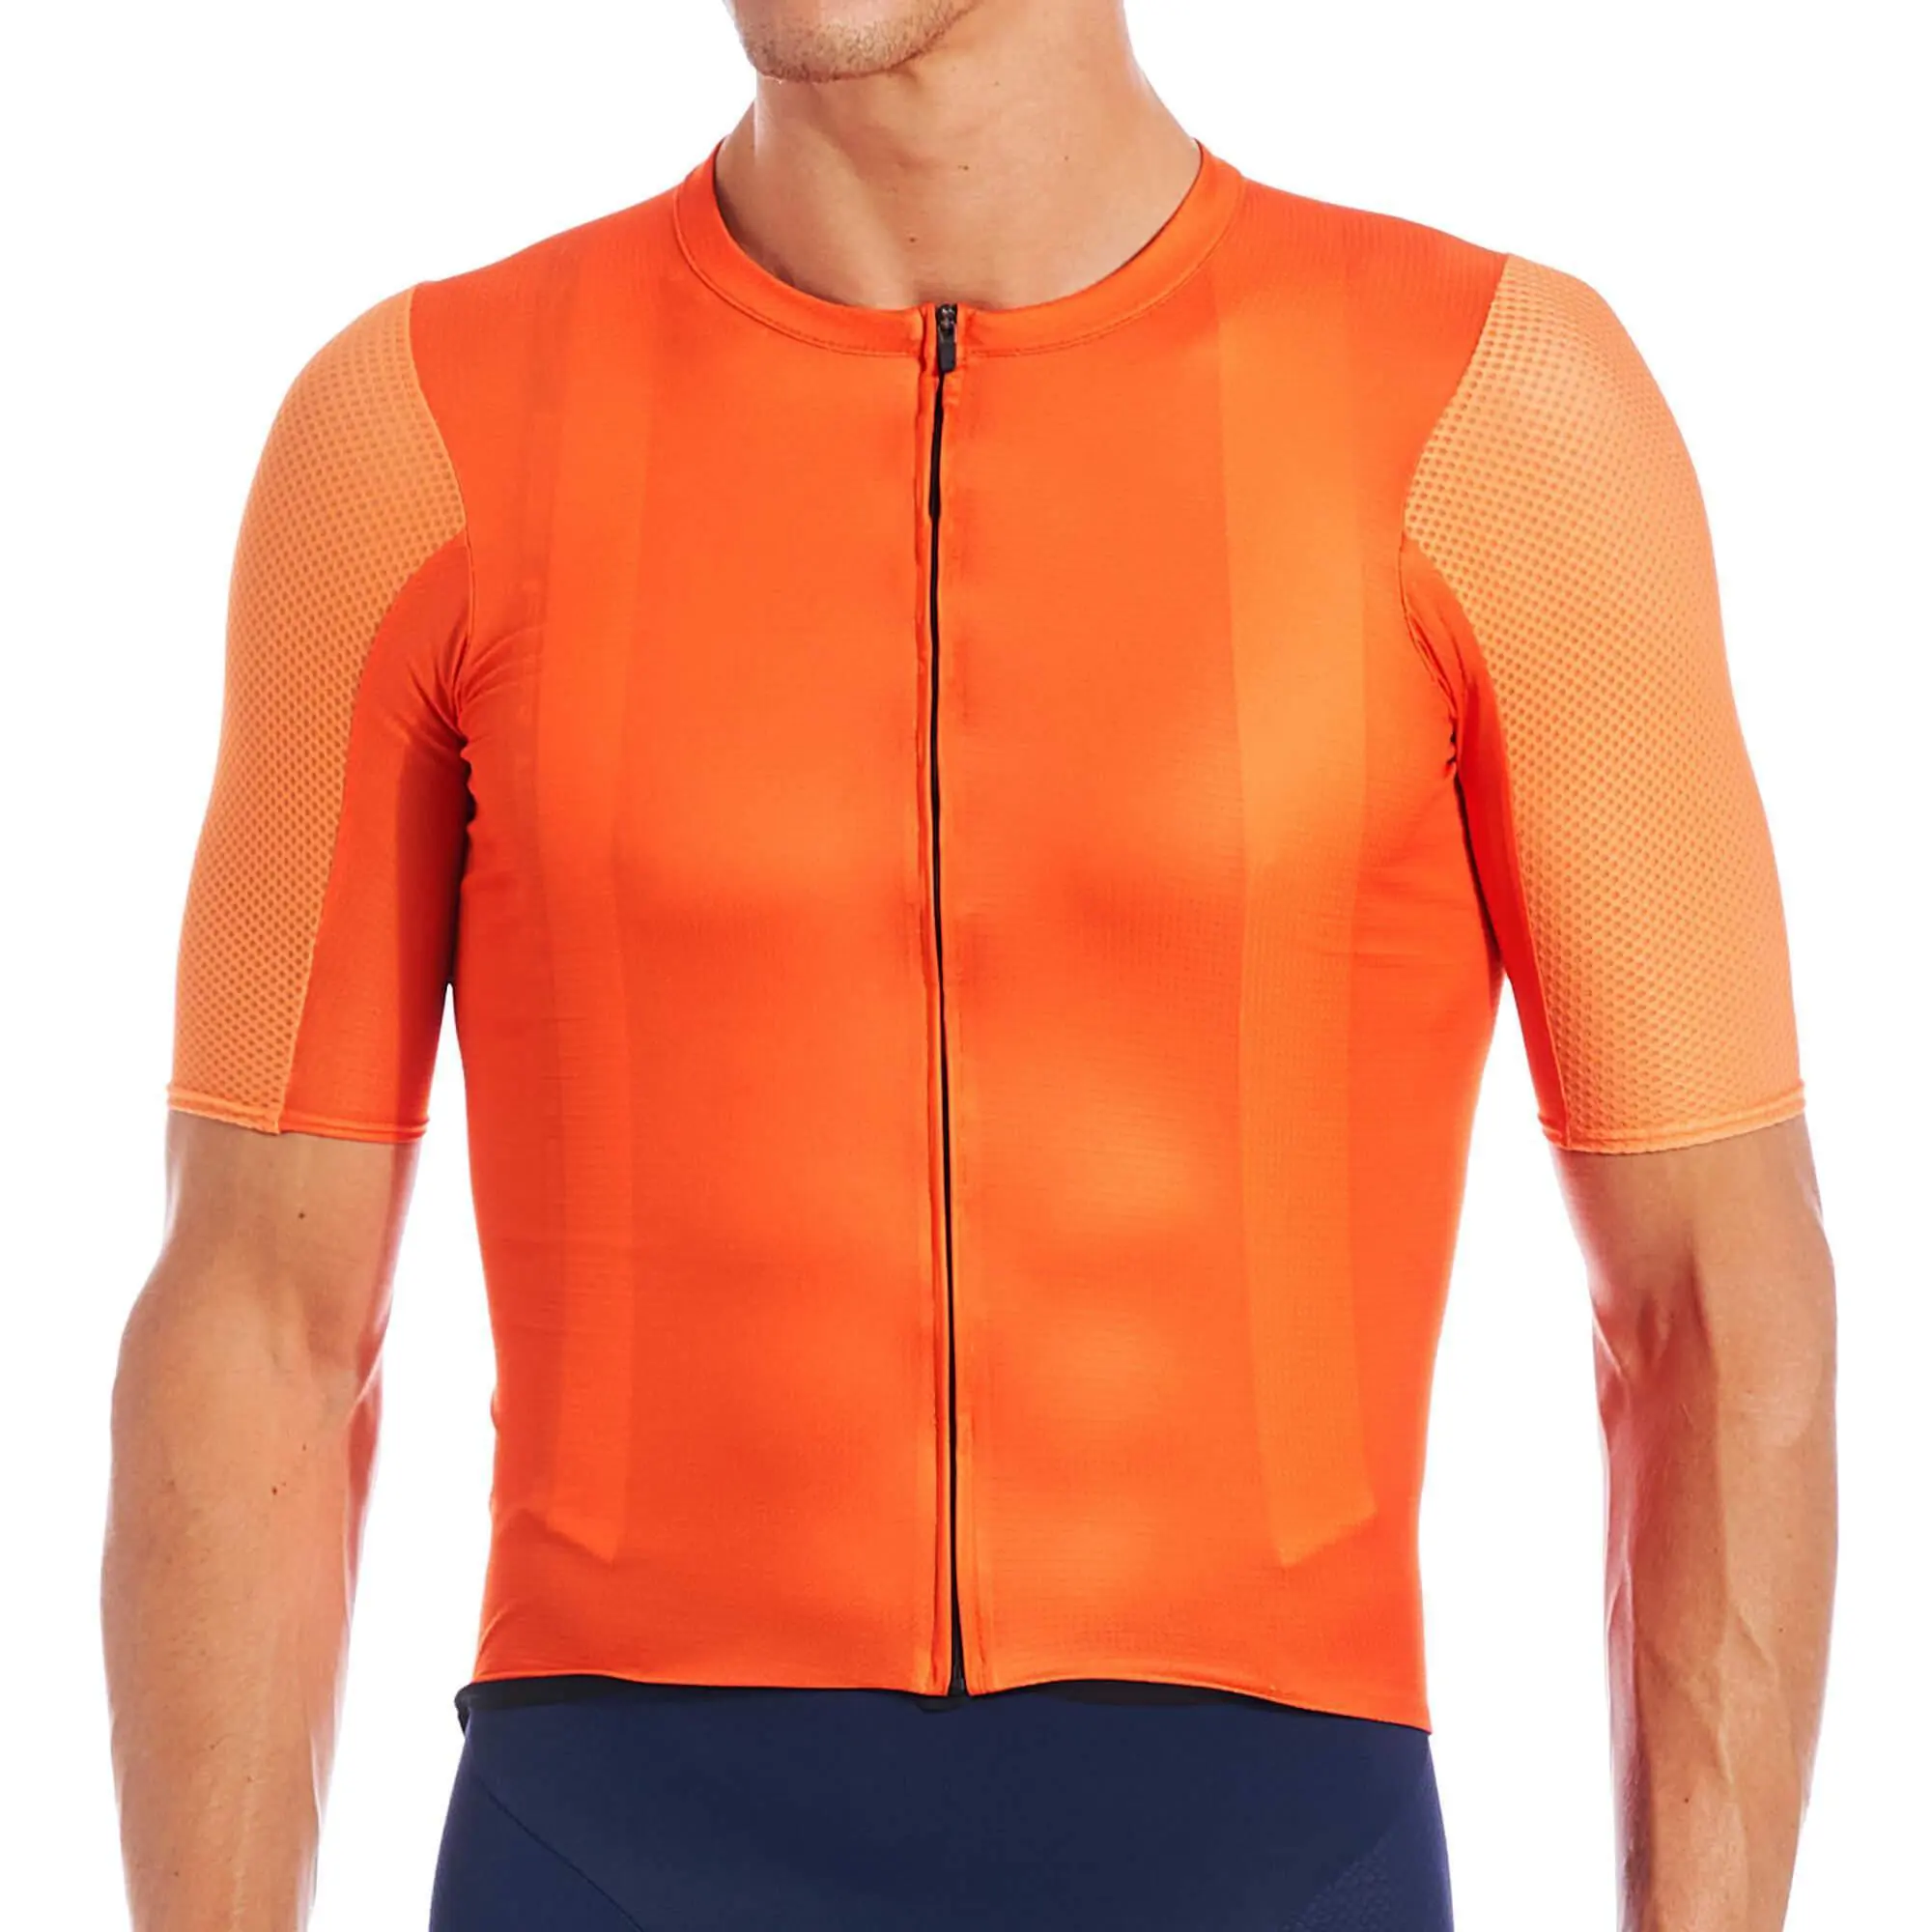 PRO Team AERO bisiklet giyim katı renkler avrupa boyutu Spandex kumaş kısa kollu özel odak erkek bisiklet forması